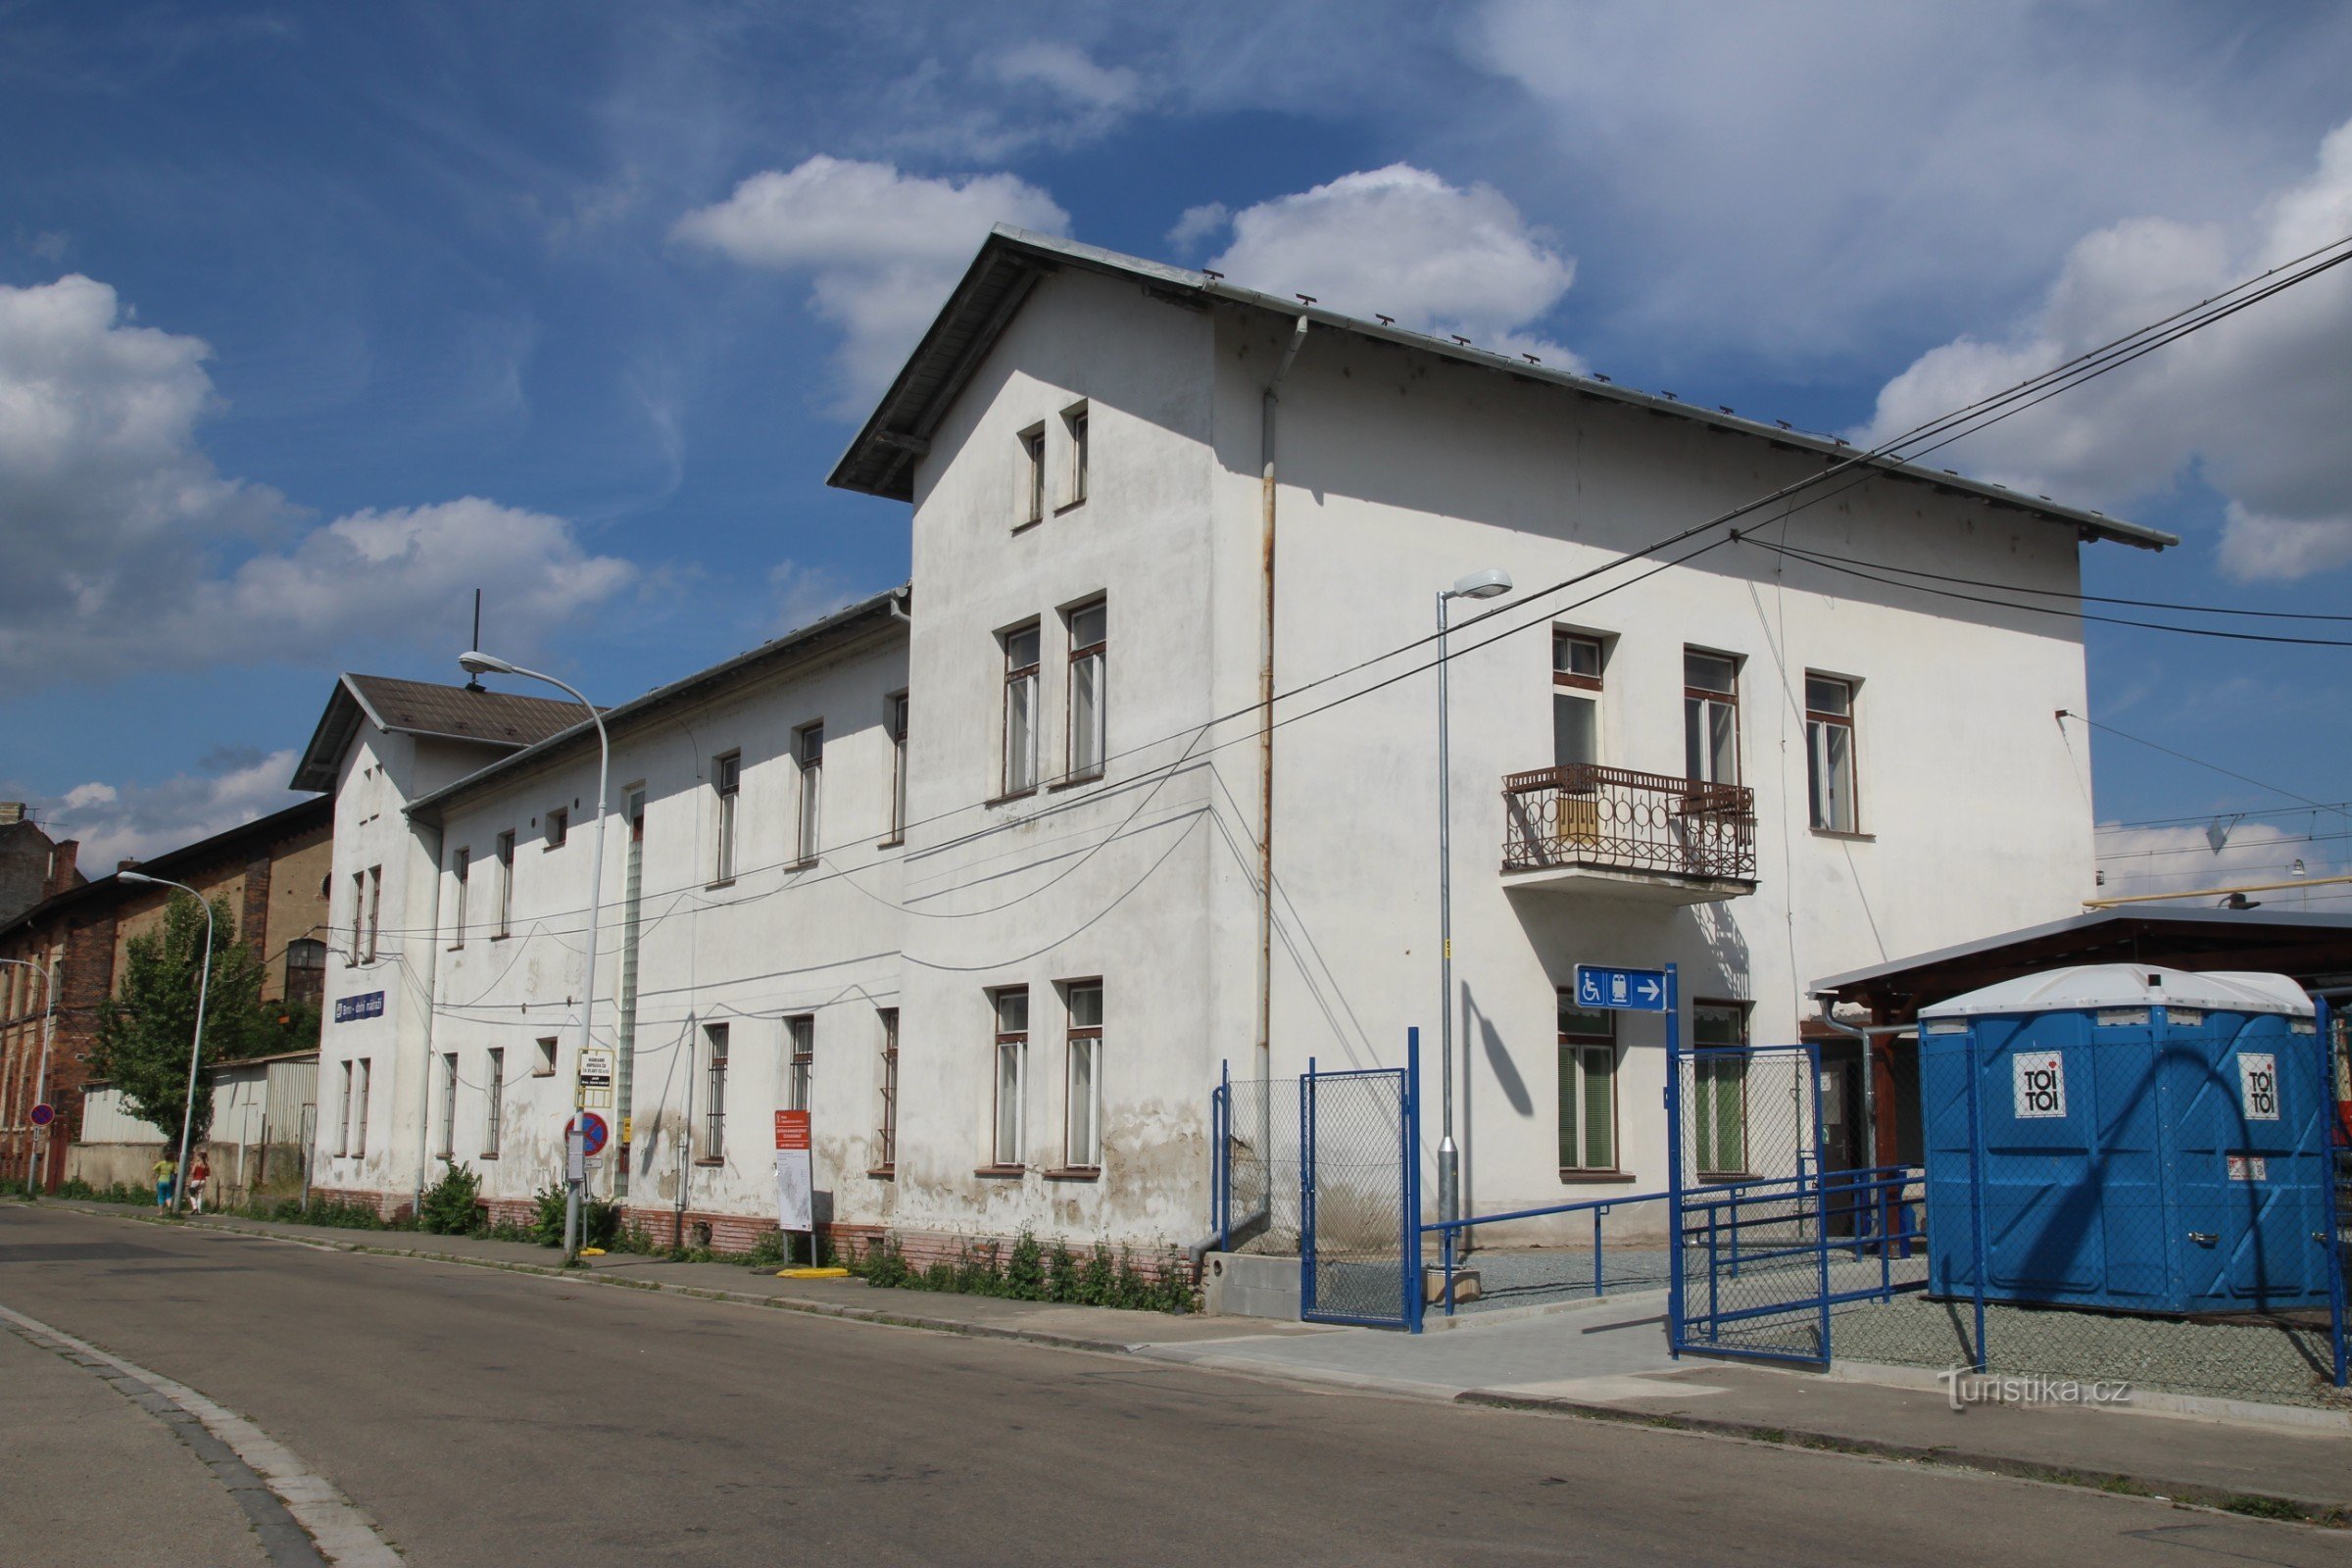 Tòa nhà văn phòng Dolní nádraží